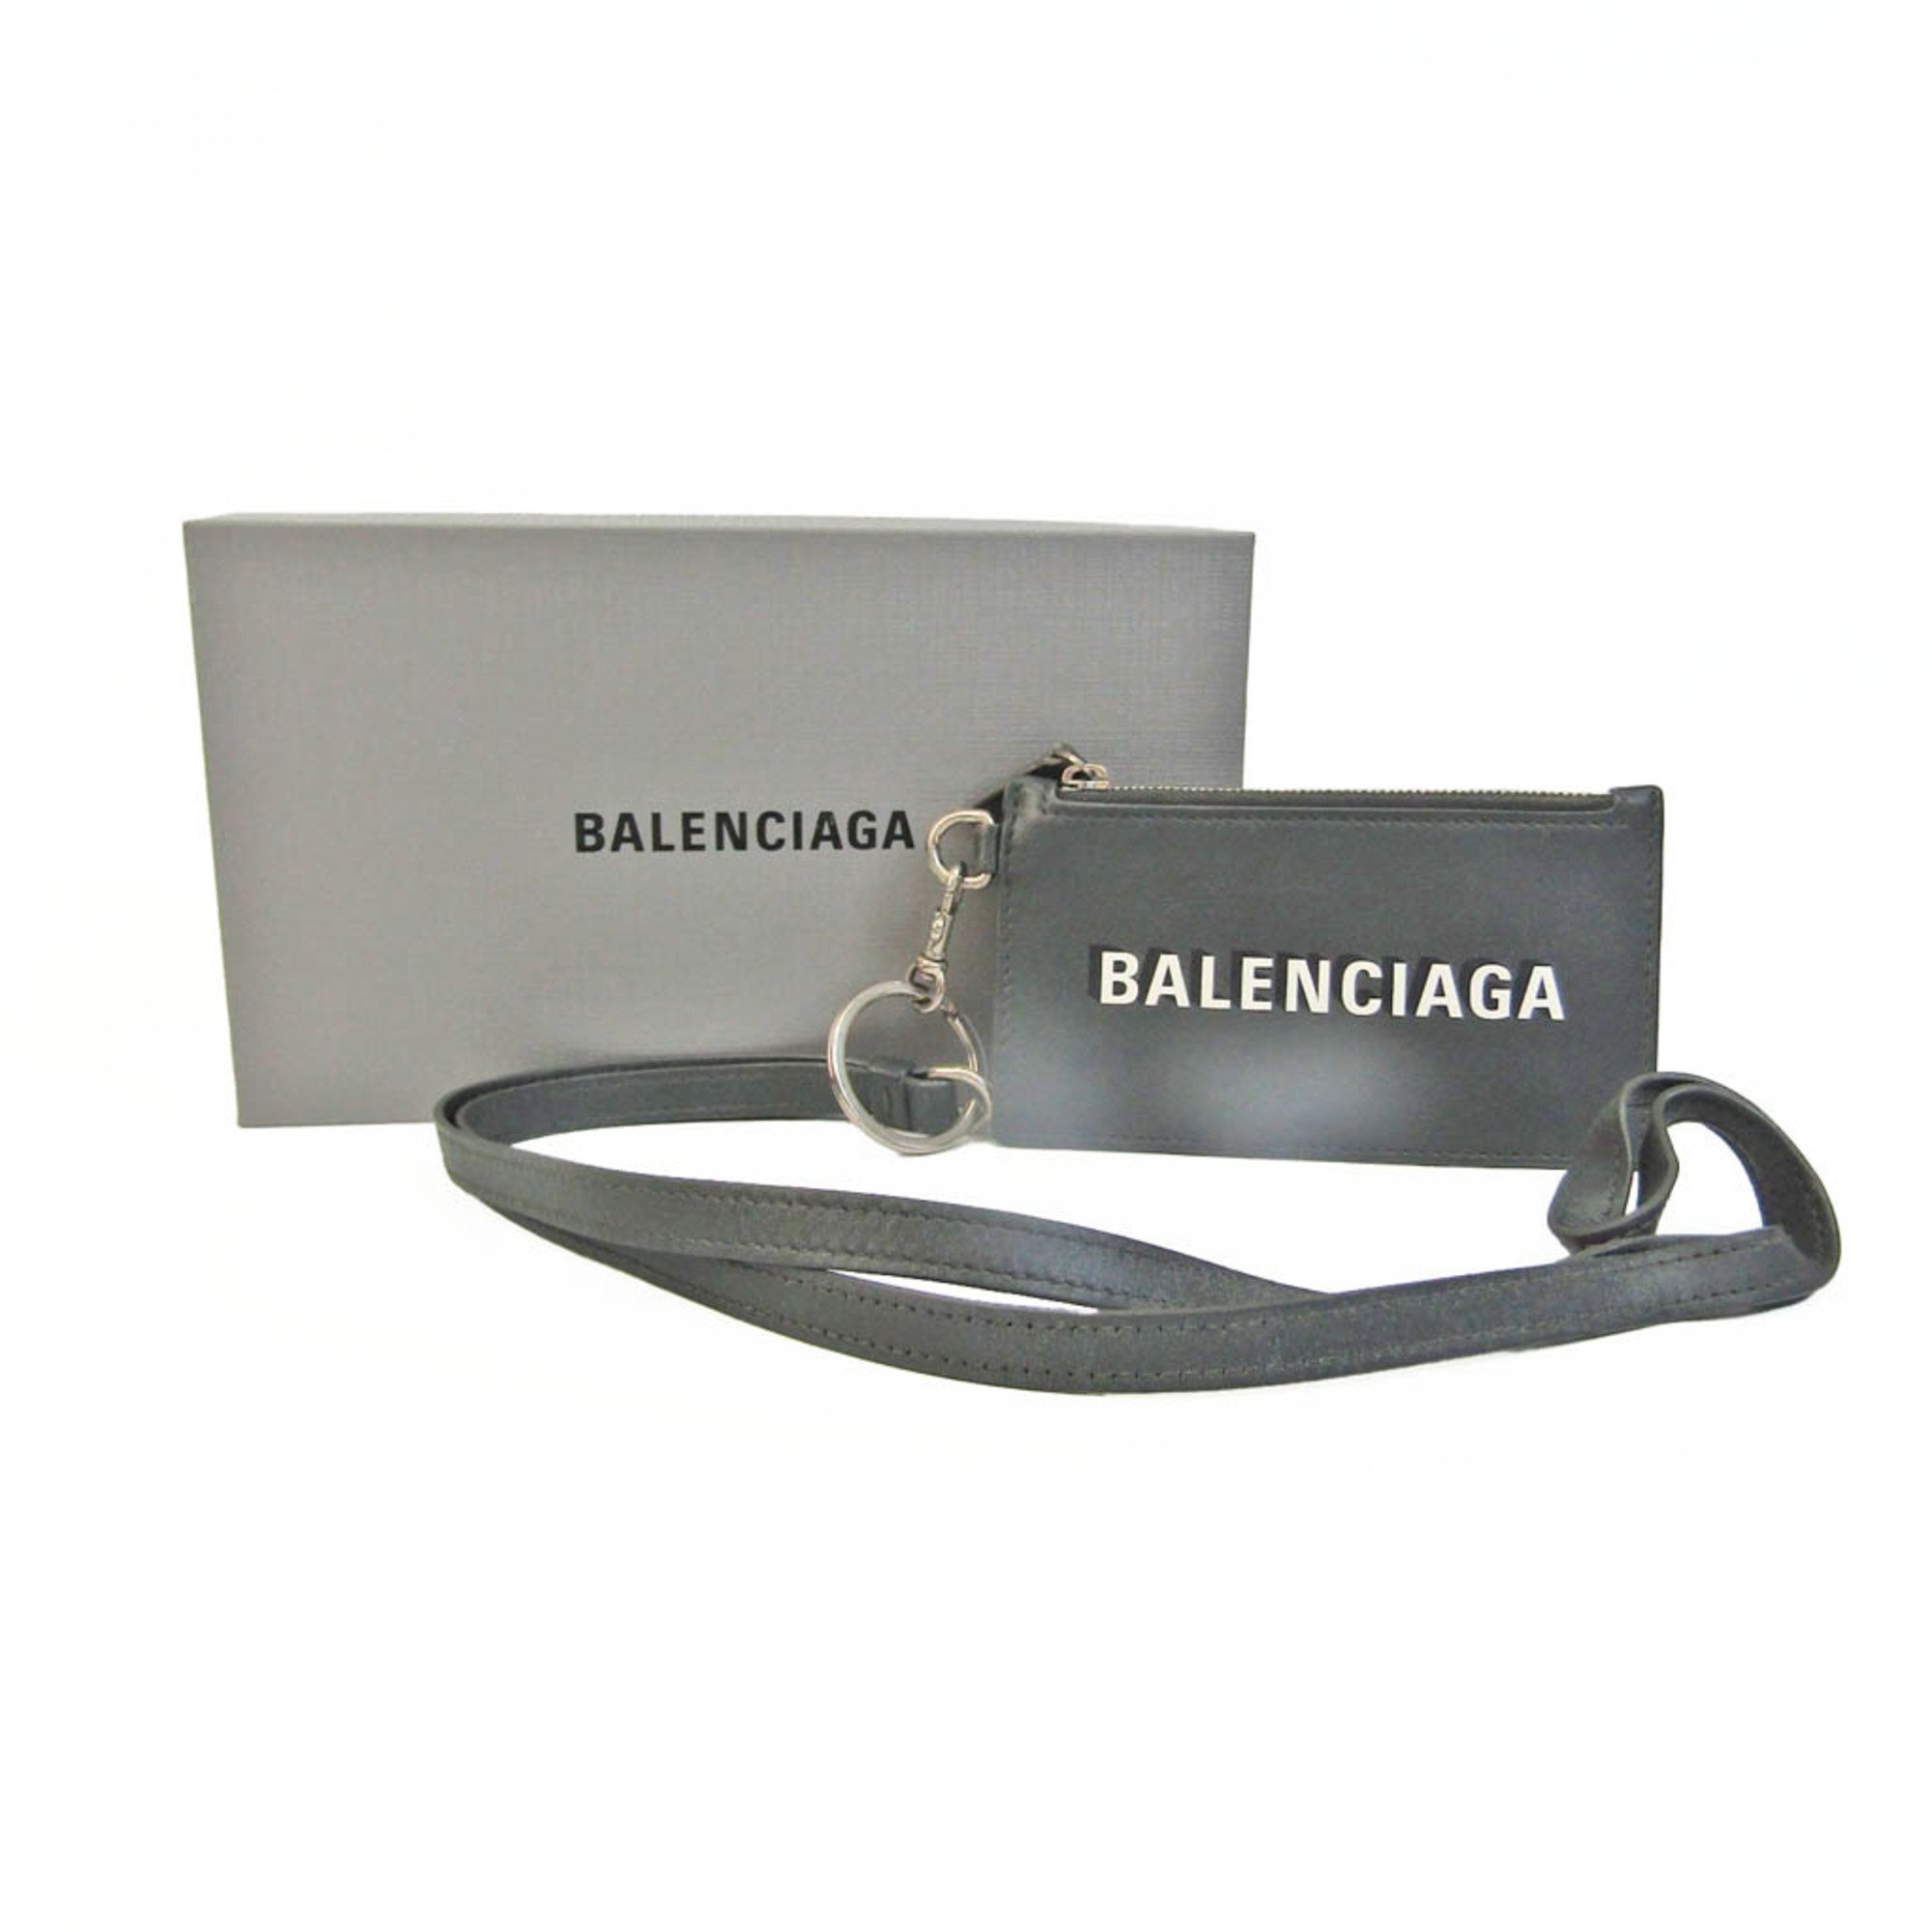 バレンシアガ(Balenciaga) フラグメントケース 594548 レディース,メンズ レザー 小銭入れ・コインケース ダークグレー